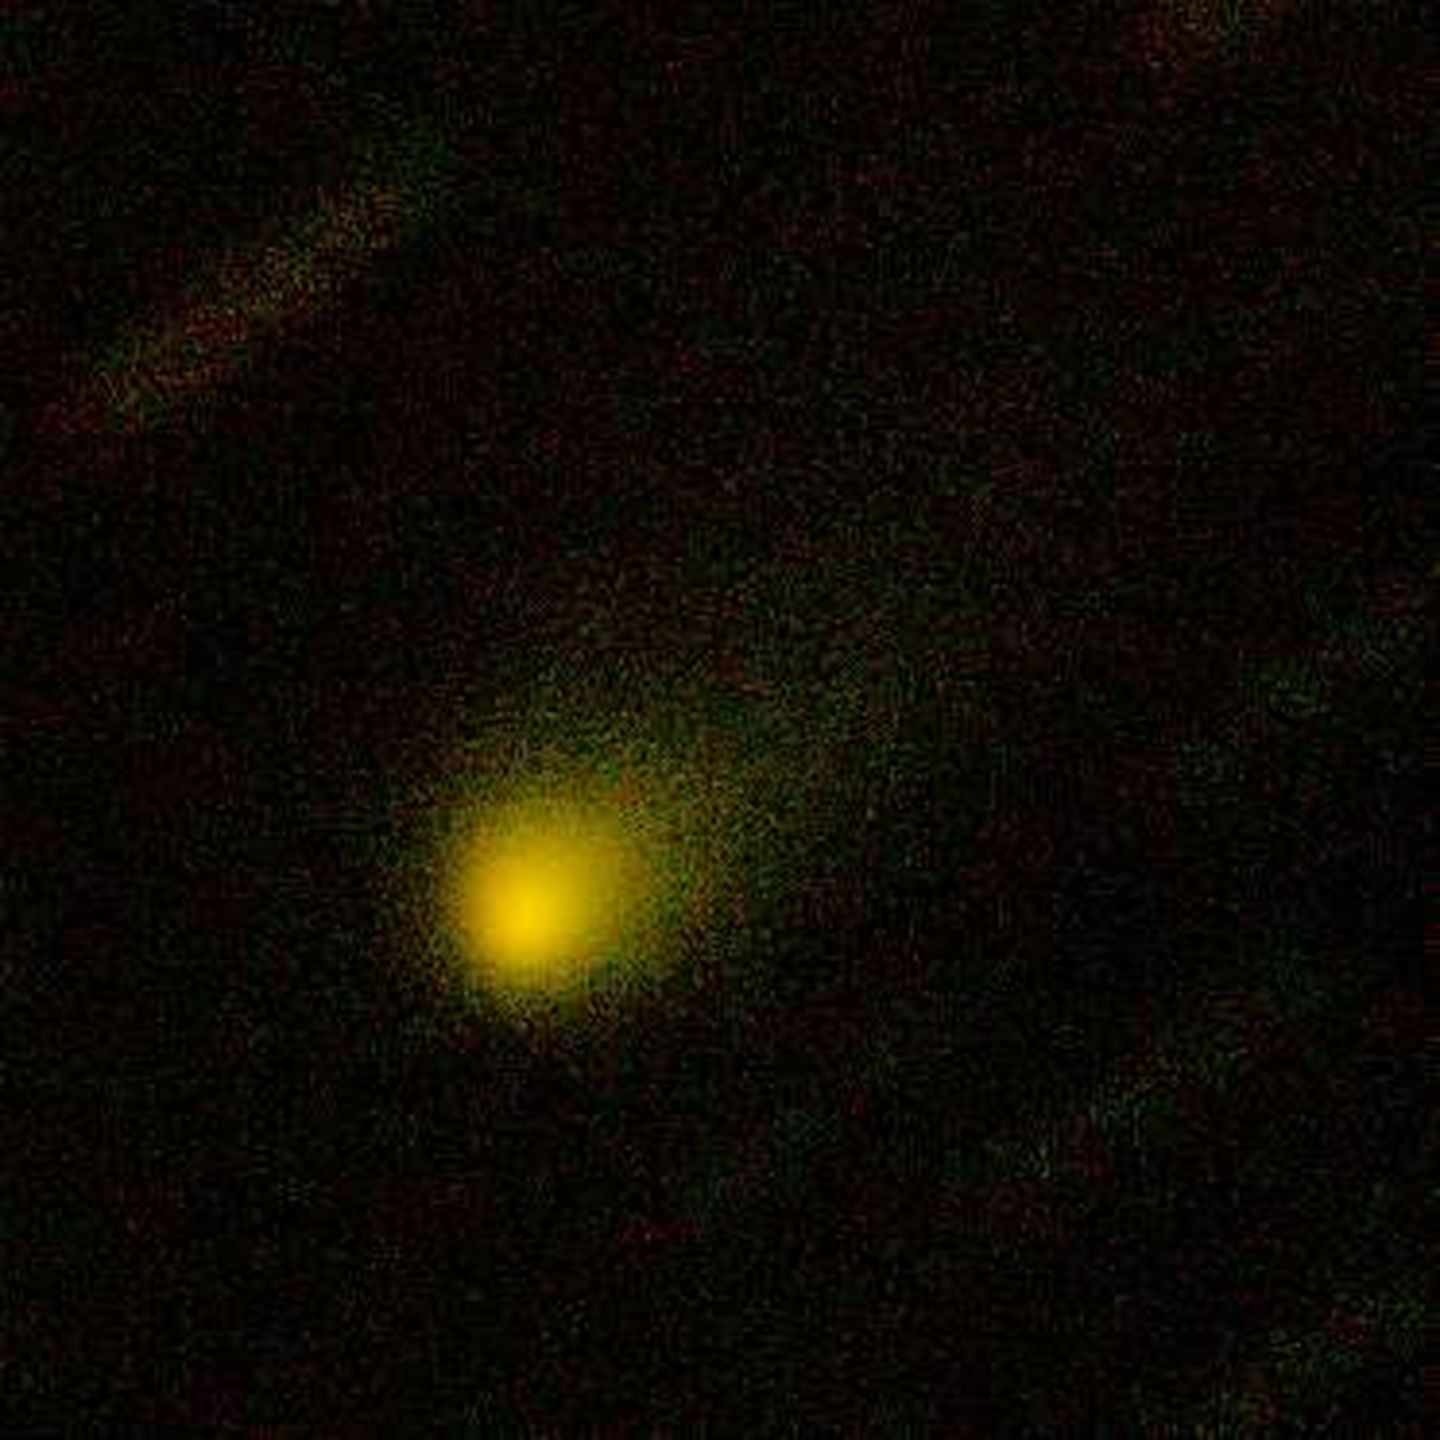 Imagen del cometa. (Foto: Nature)